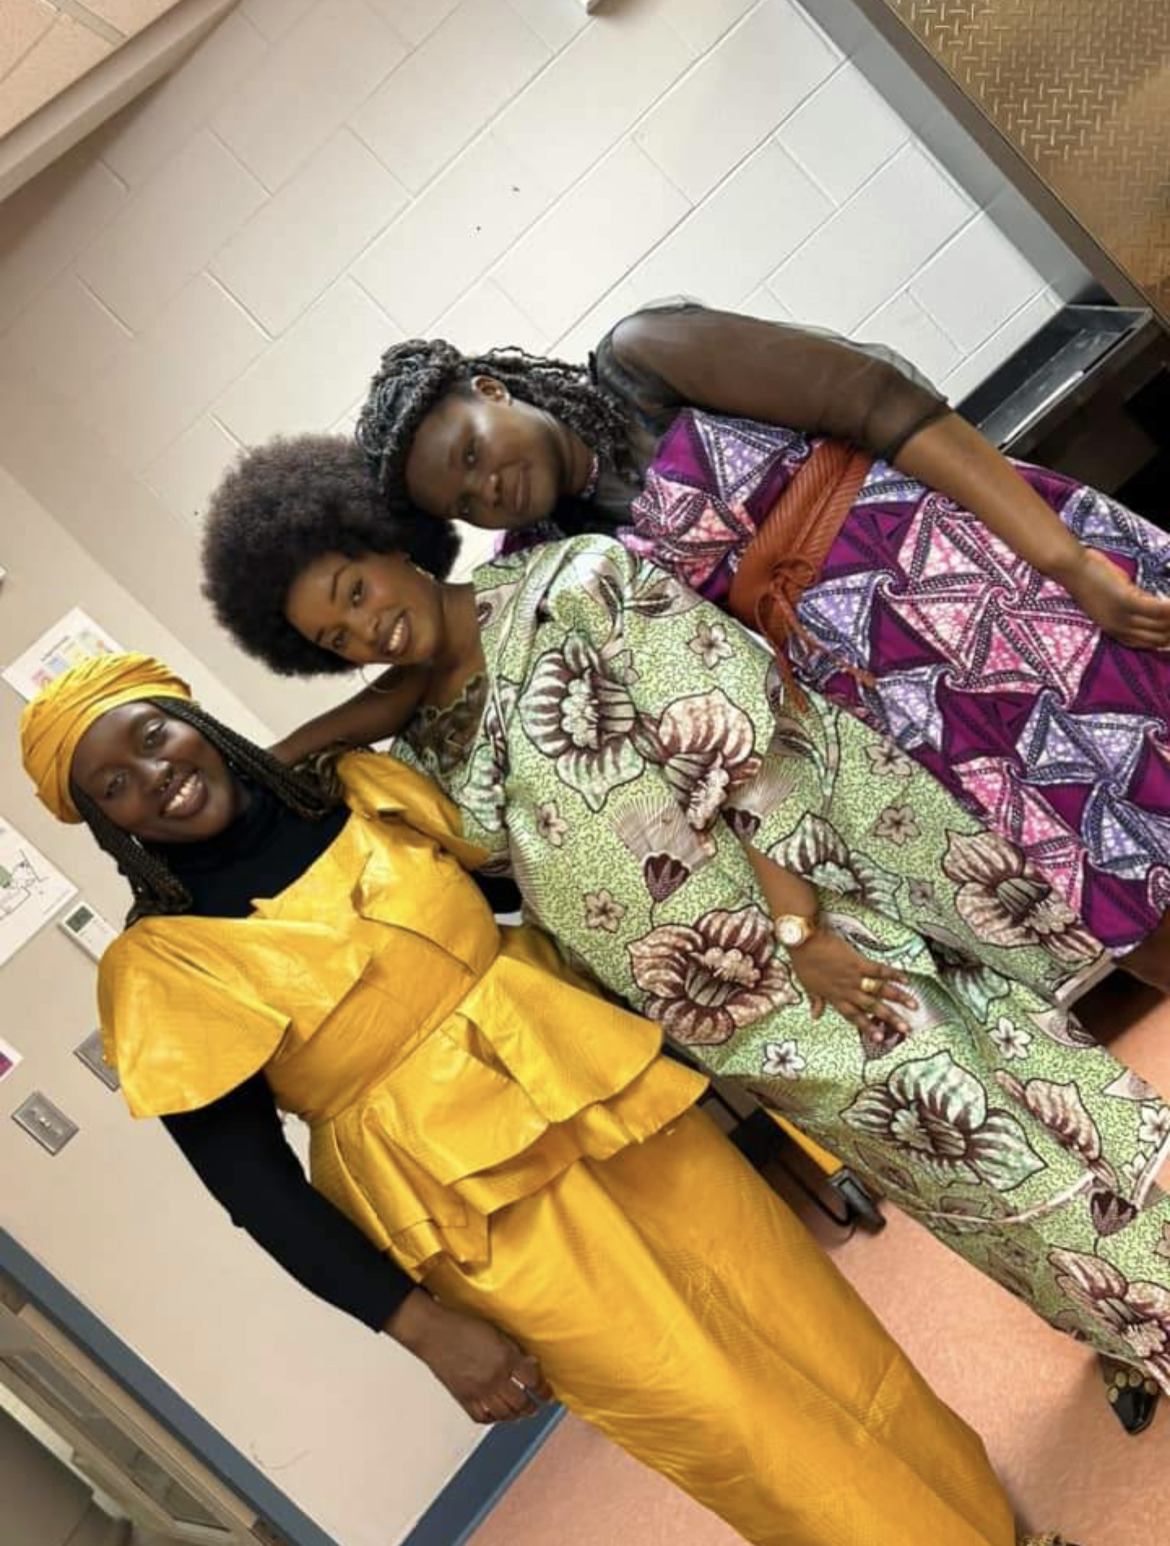 De gauche à droite: Habi Diop, Grâce Iradukunda du Burundi et Koubaka Ursula de la République du Congo. Photo: Courtoisie